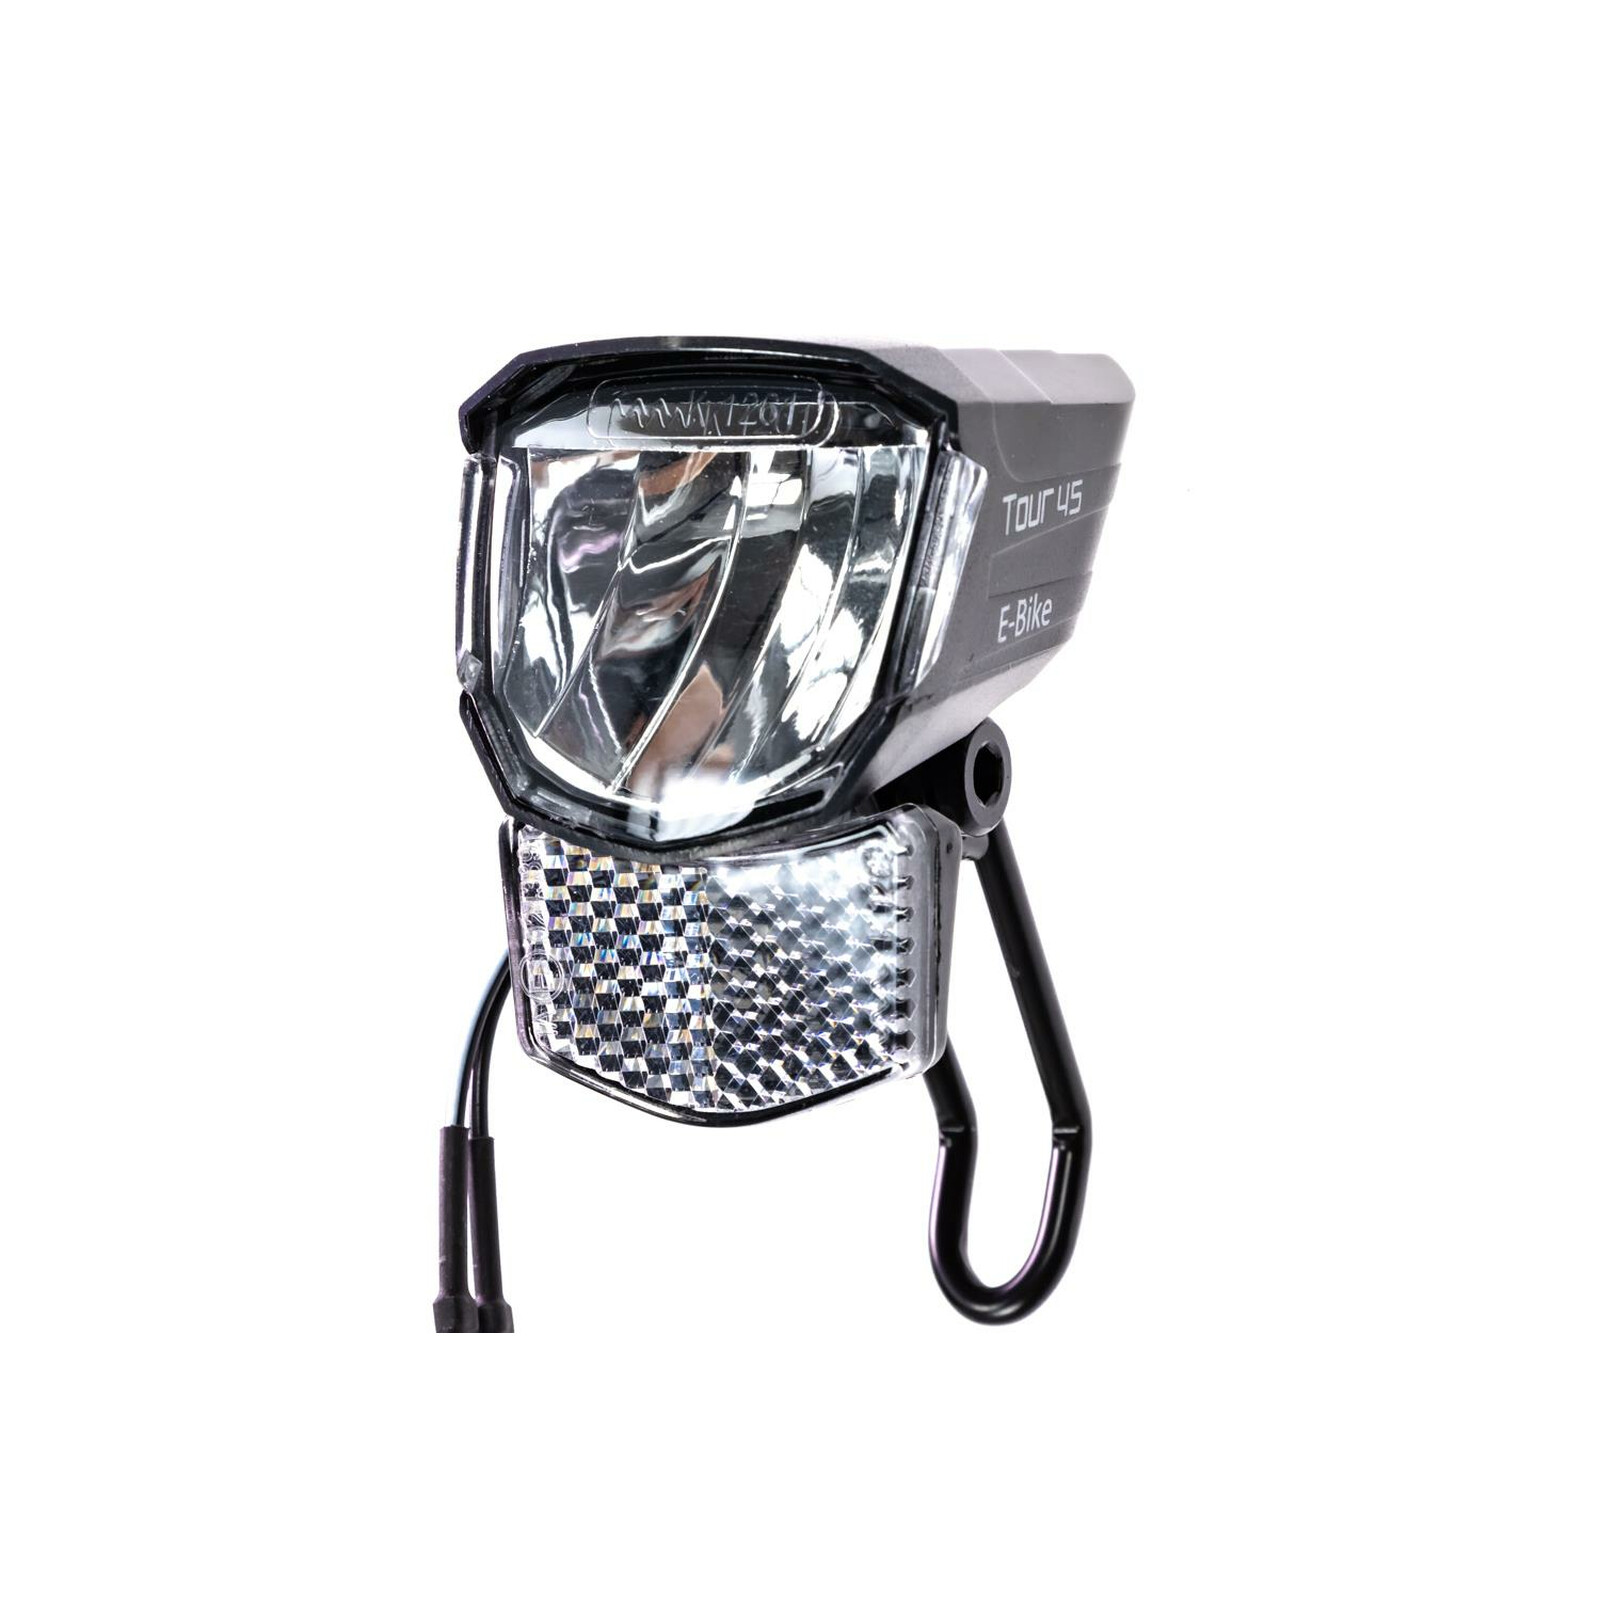 BÜCHEL Tour Dynamo Lampe mit Standlicht und StVZO Zulassung I 45 LUX  Fahrradlampe vorne, LED Standlicht, Fahrrad Scheinwerfer, LED Fahrradlicht  vorne : : Sport & Freizeit